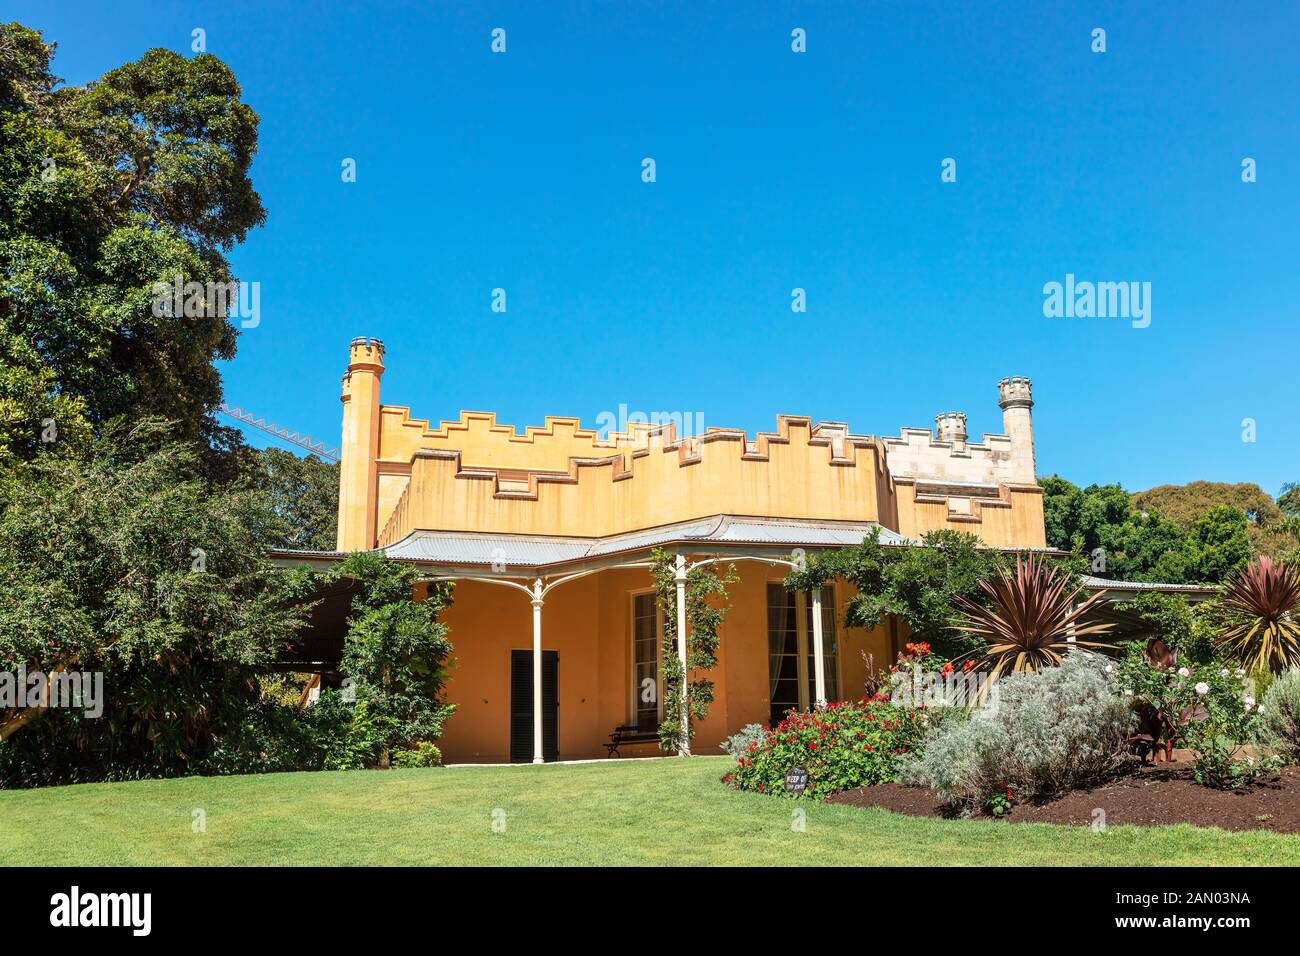 Vaucluse House est un manoir du xixe siècle, entouré par son parc boisé et de jardins d'origine dans la banlieue de Sydney, Australie. Vaucluse Banque D'Images